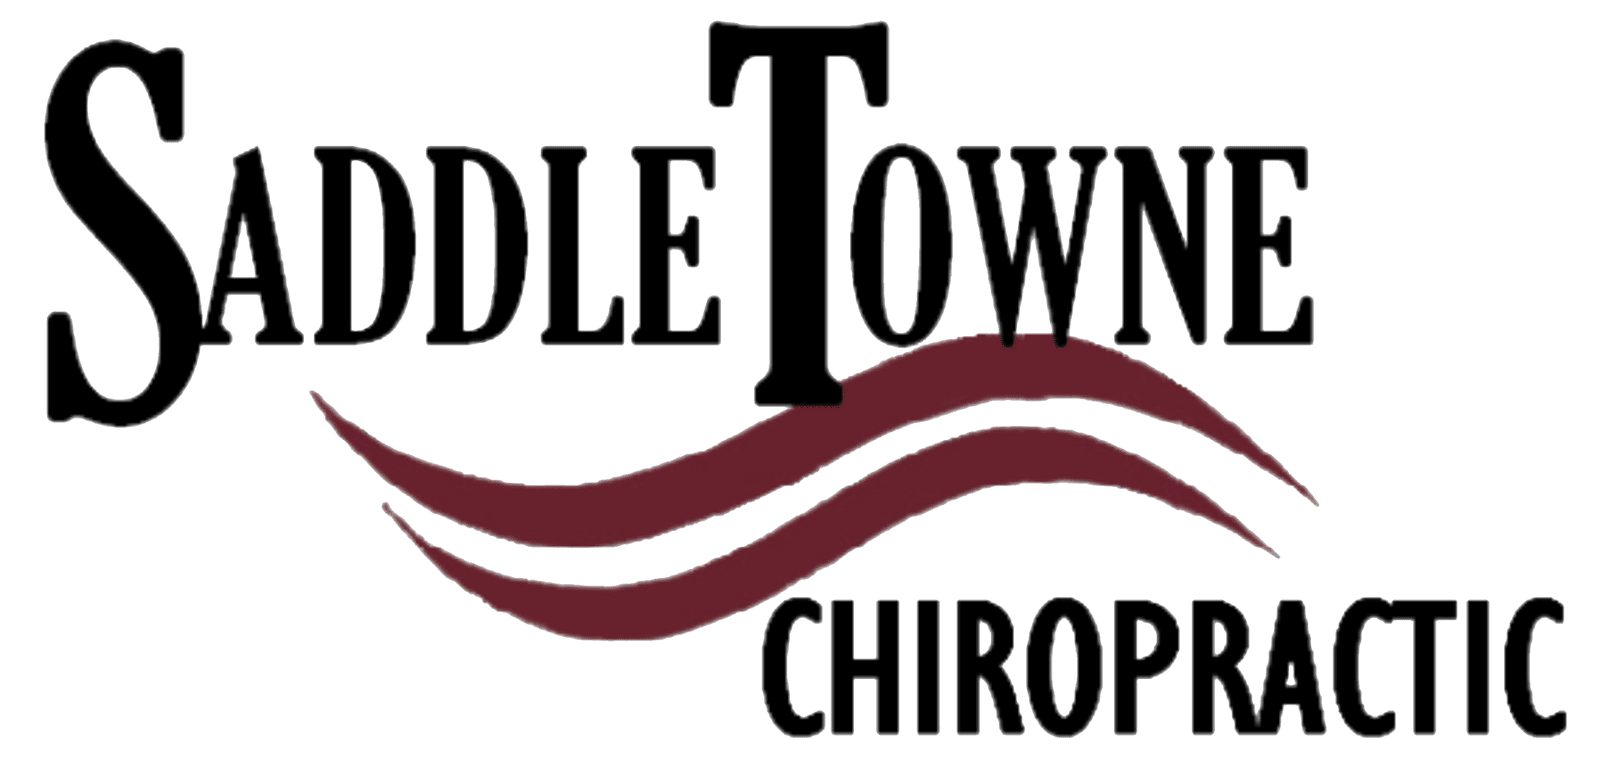 Saddletowne Chiropractic